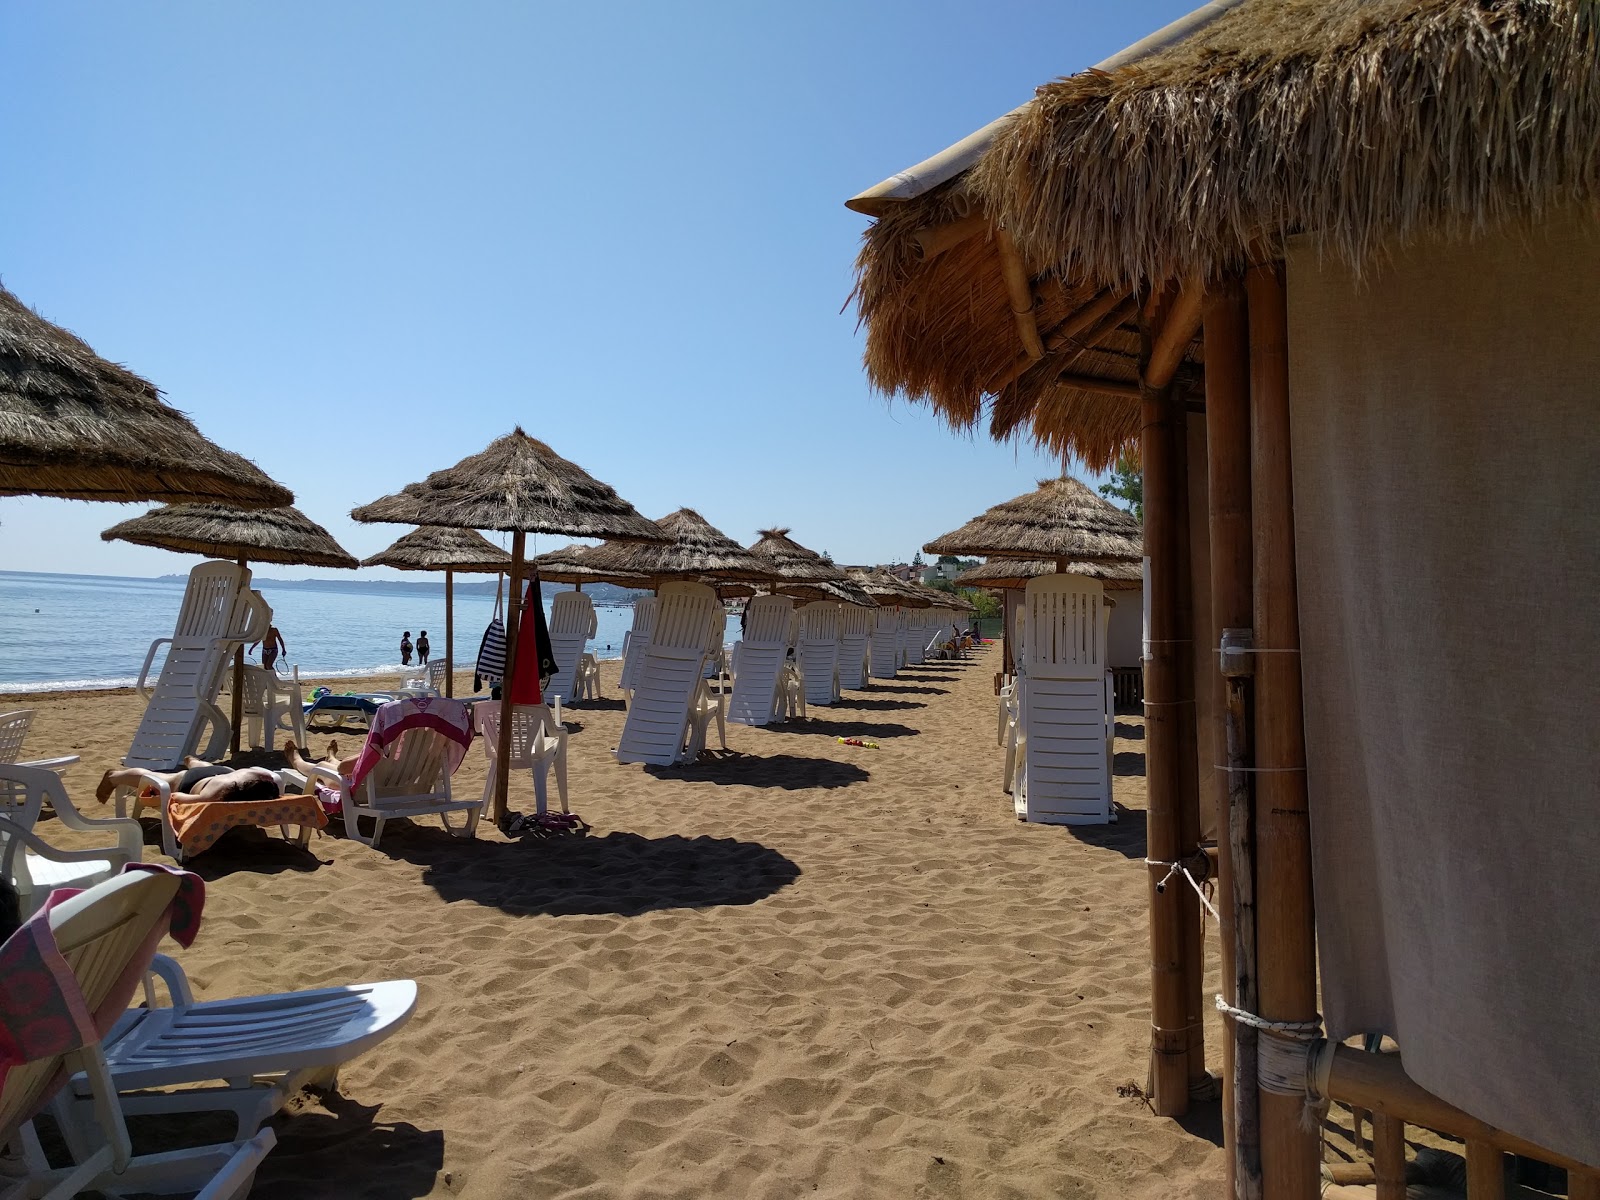 Foto af Spiaggia di Via Poseidonia - populært sted blandt afslapningskendere